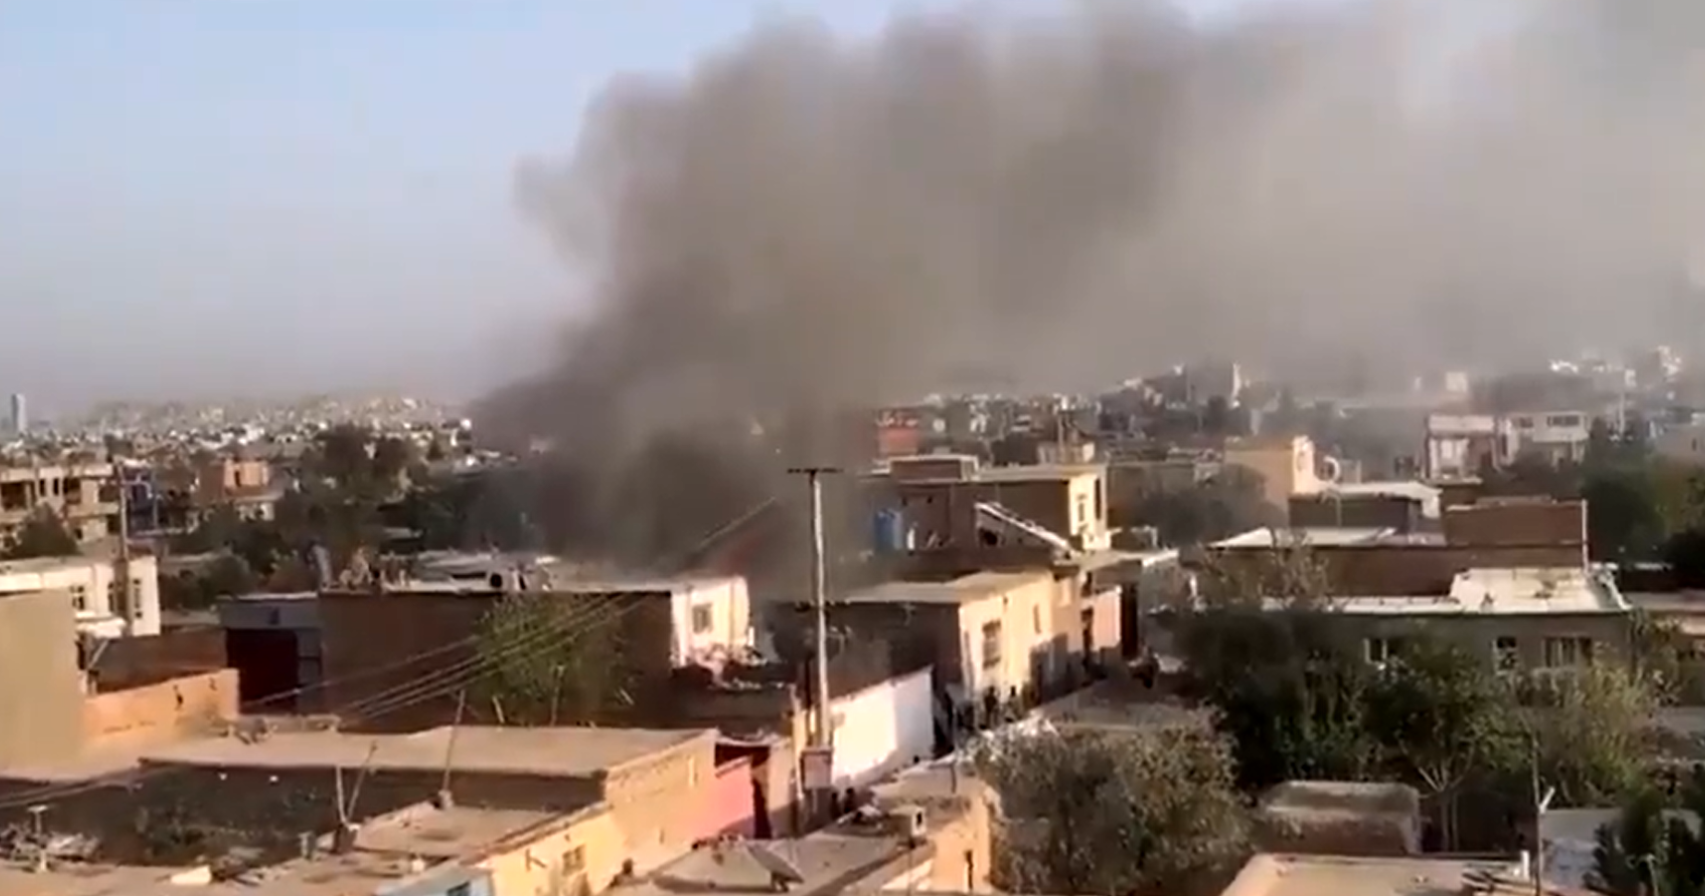 SHBA sulmon me raketë një godinë në Kabul